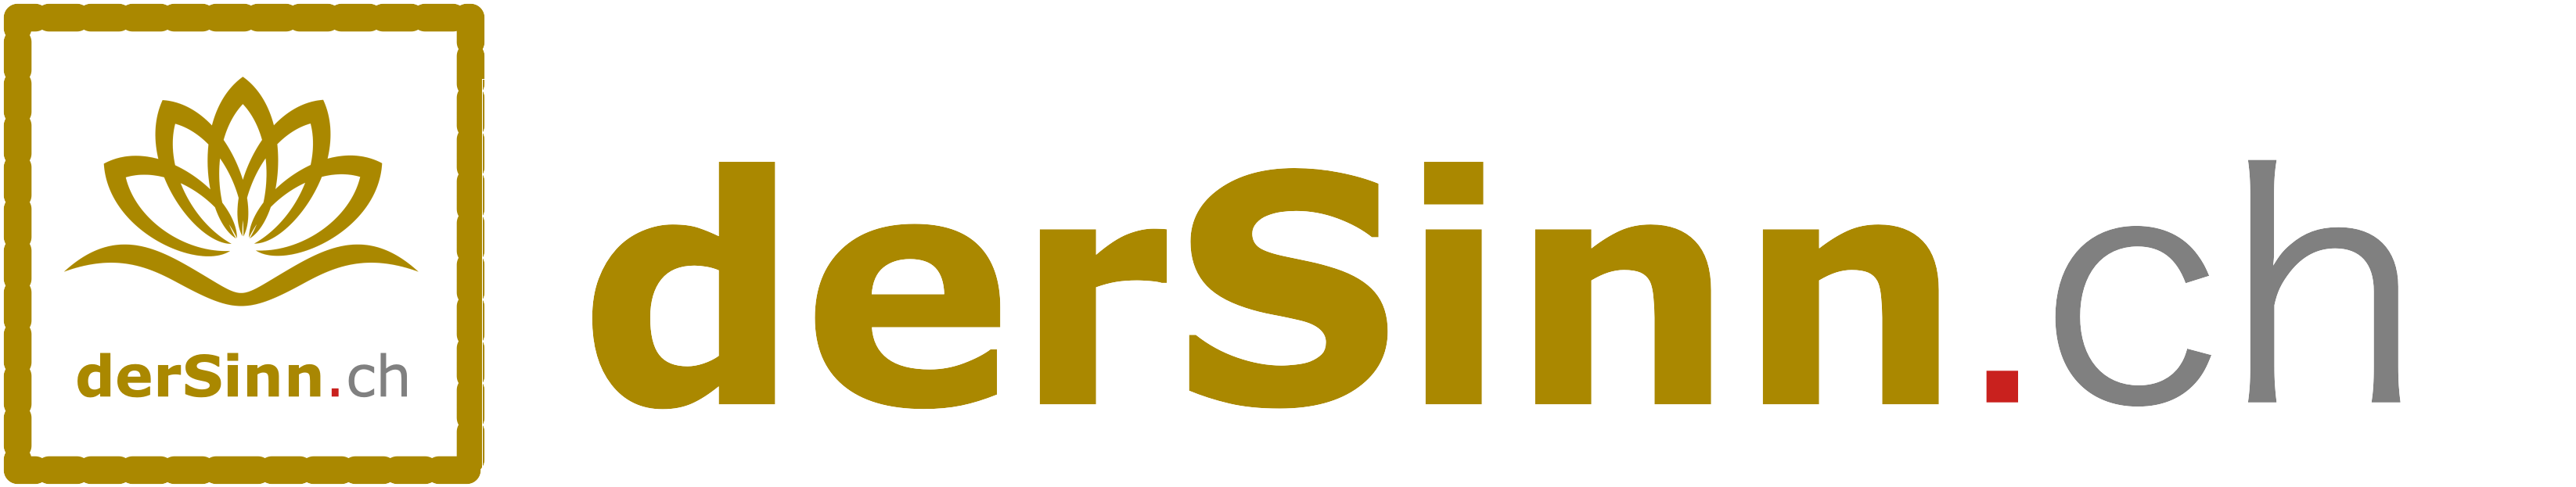 Logo dersinn.ch